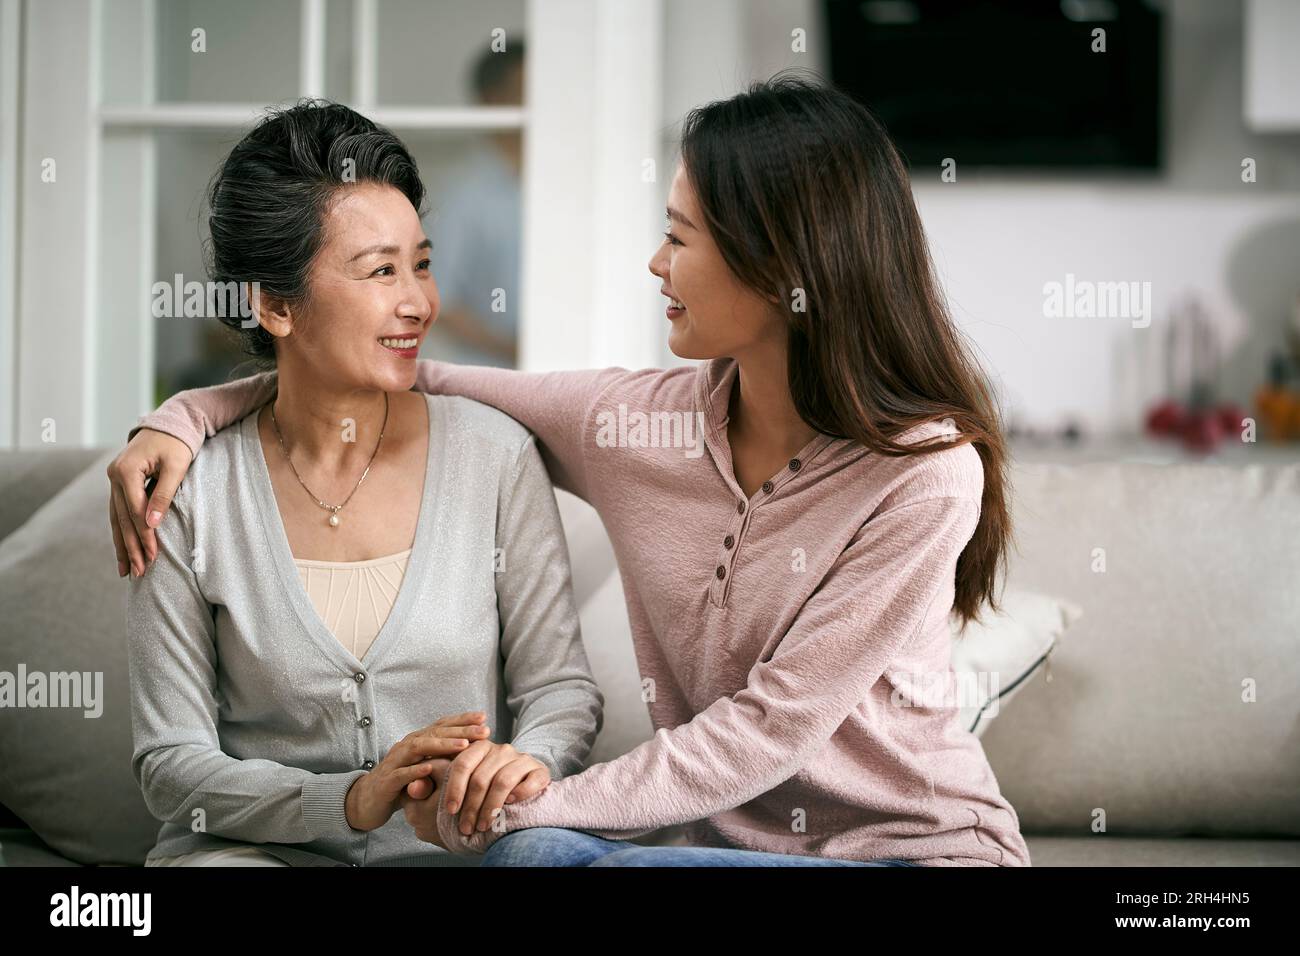 asiatische Erwachsene Tochter und Seniorenmutter, die zu Hause auf der Couch sitzen und ein angenehmes Gespräch führen Stockfoto